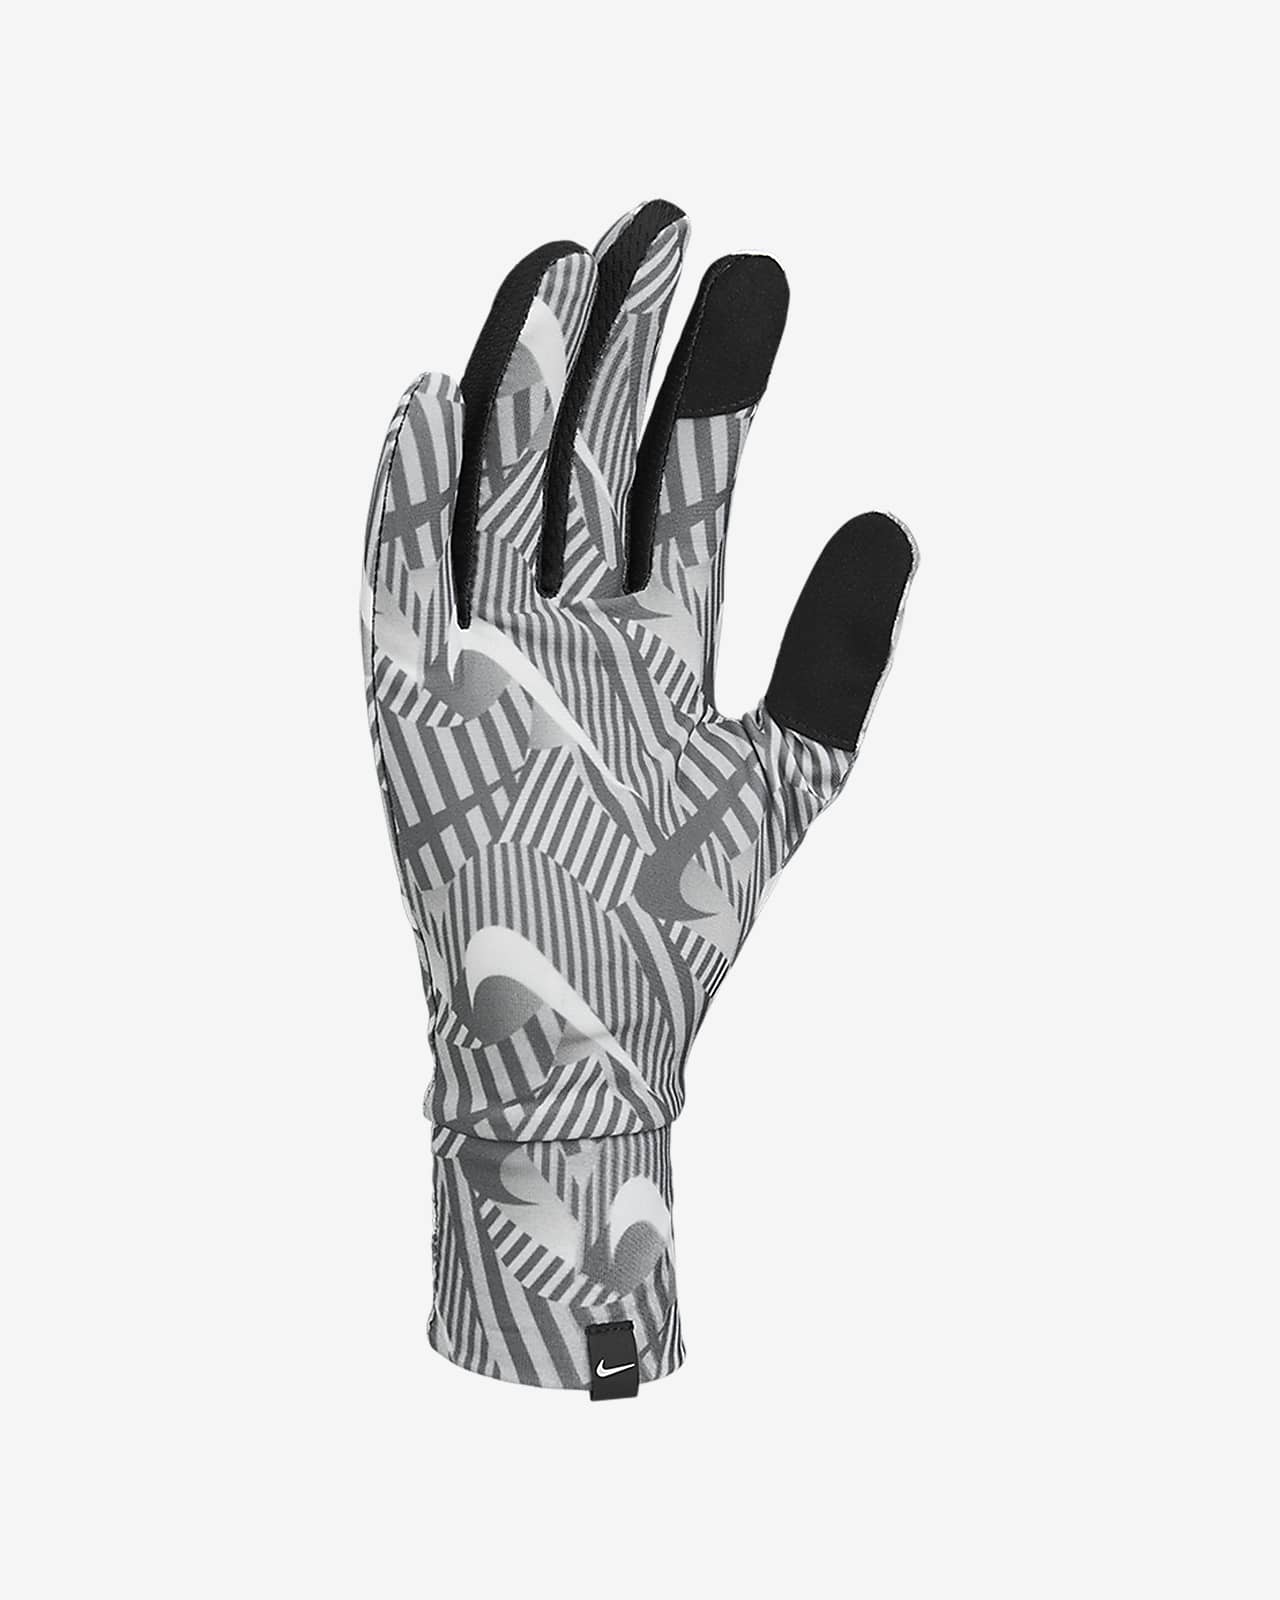 nike women's lightweight tech running gloves